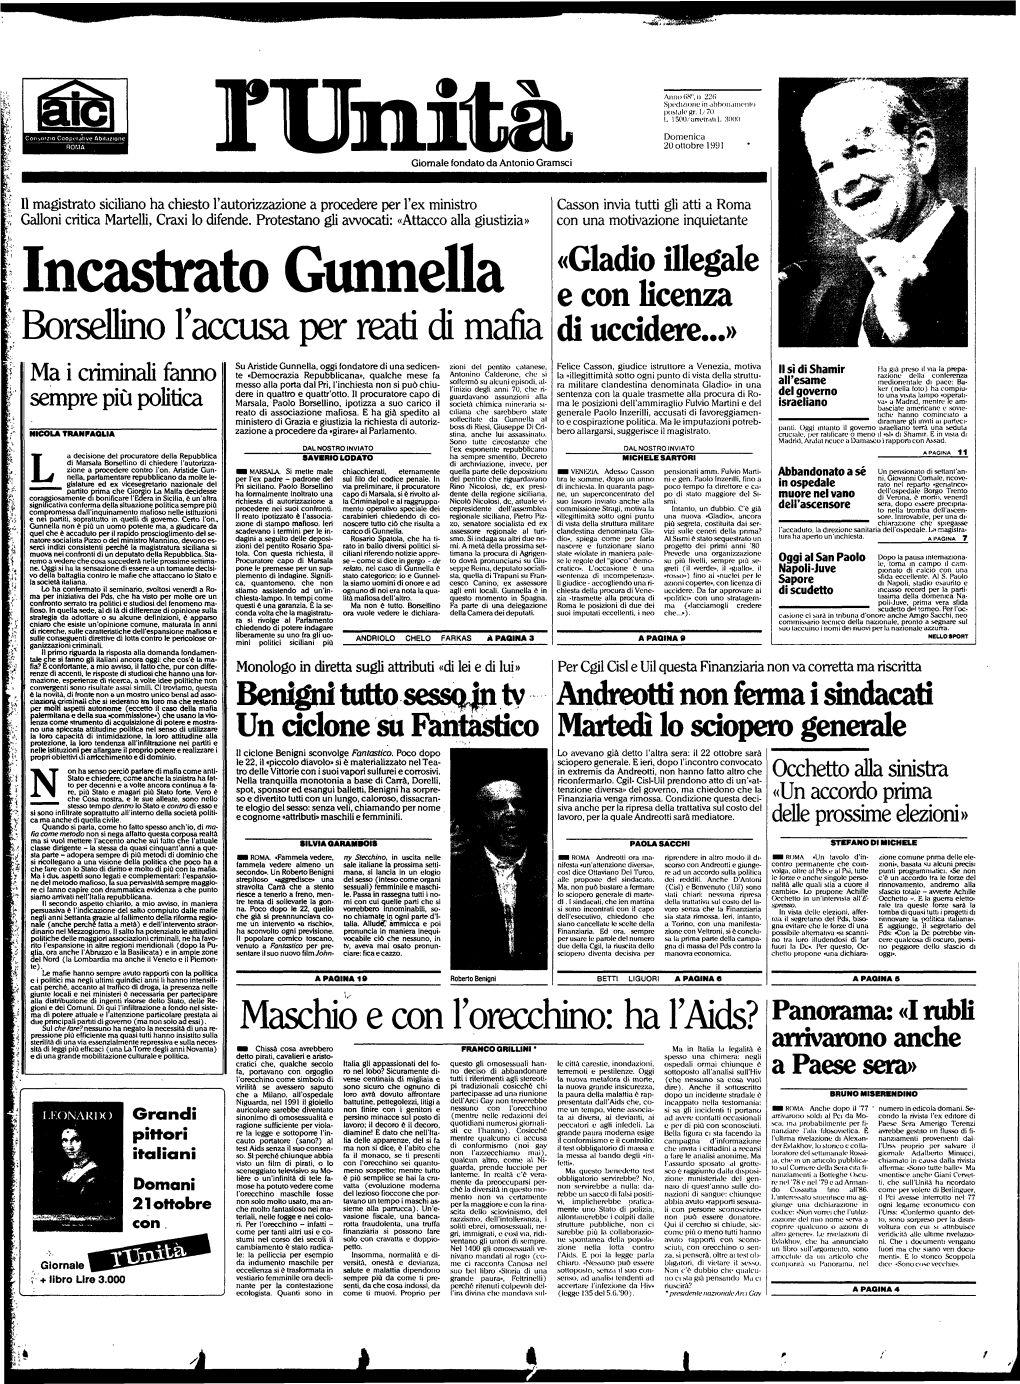 Incastrato Giumella E Con Licenza Borsellino L'accusa Oer Reati Di Mafc Di Uccidere...»